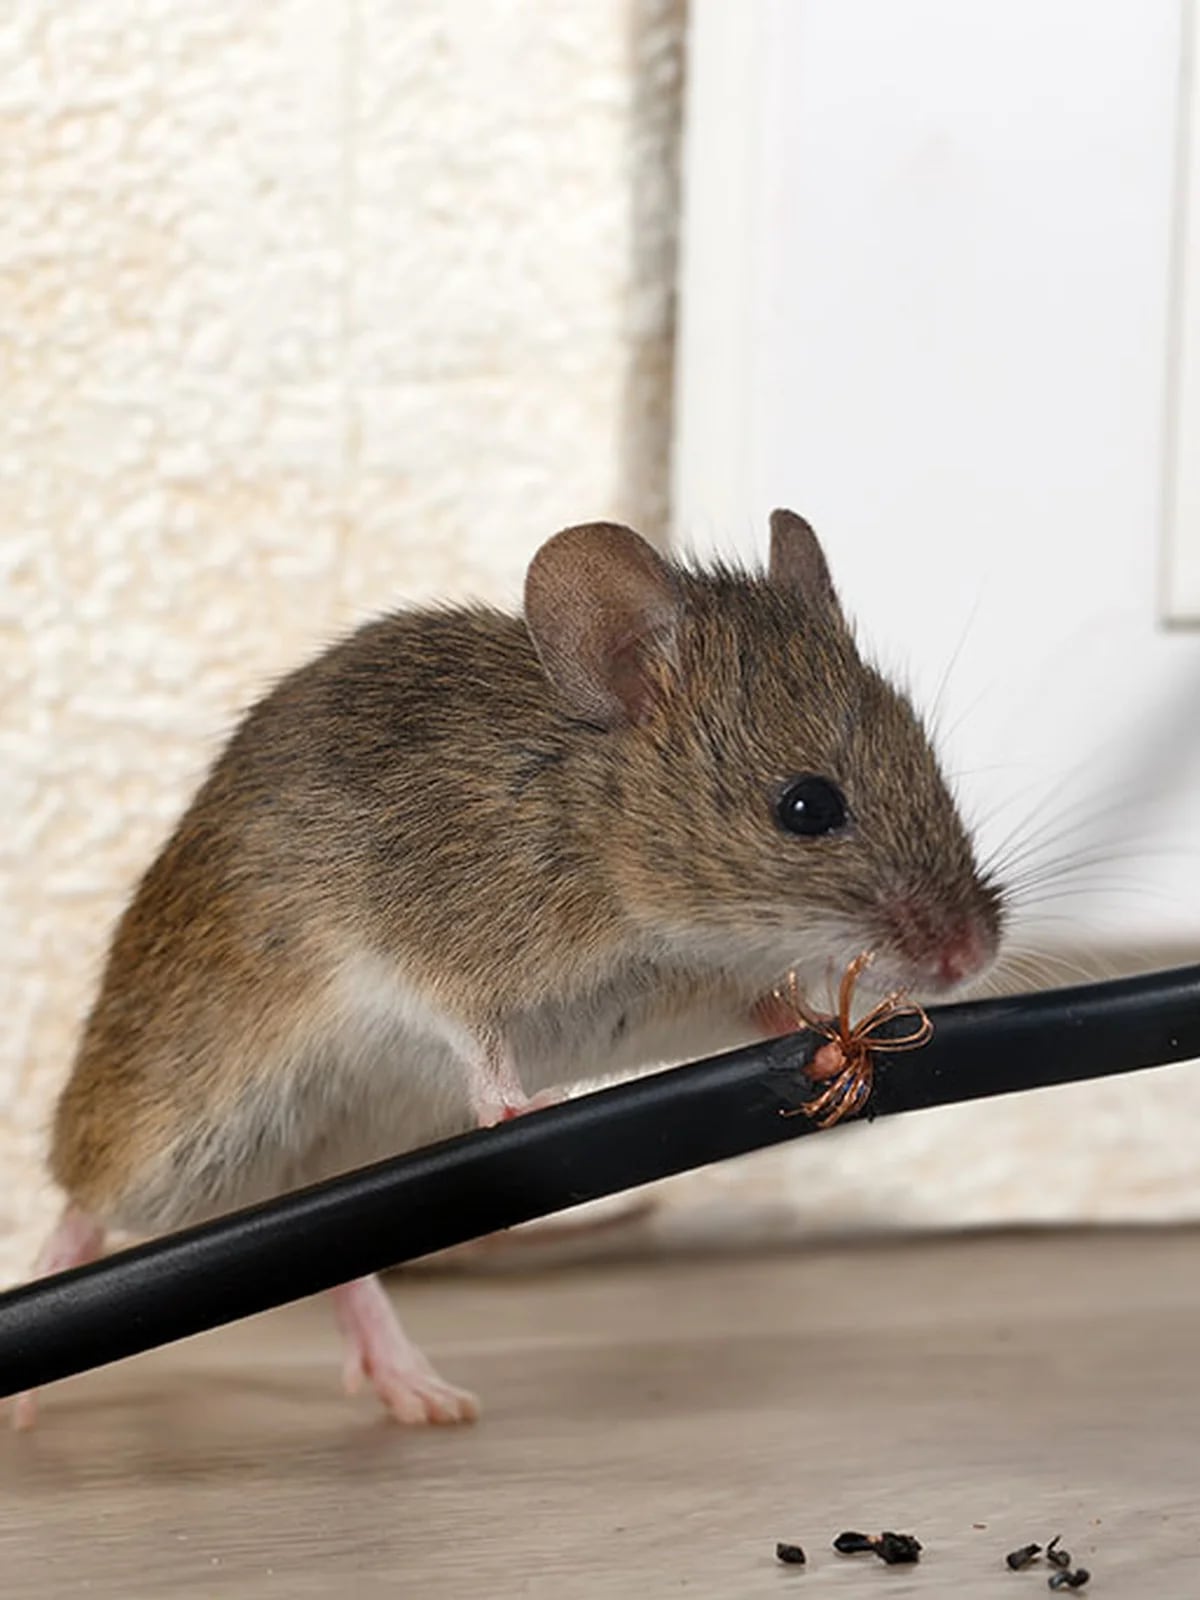 Qué hacer si entra un roedor a tu casa?, es importante mantener la calma y  priorizar la seguridad - Infobae